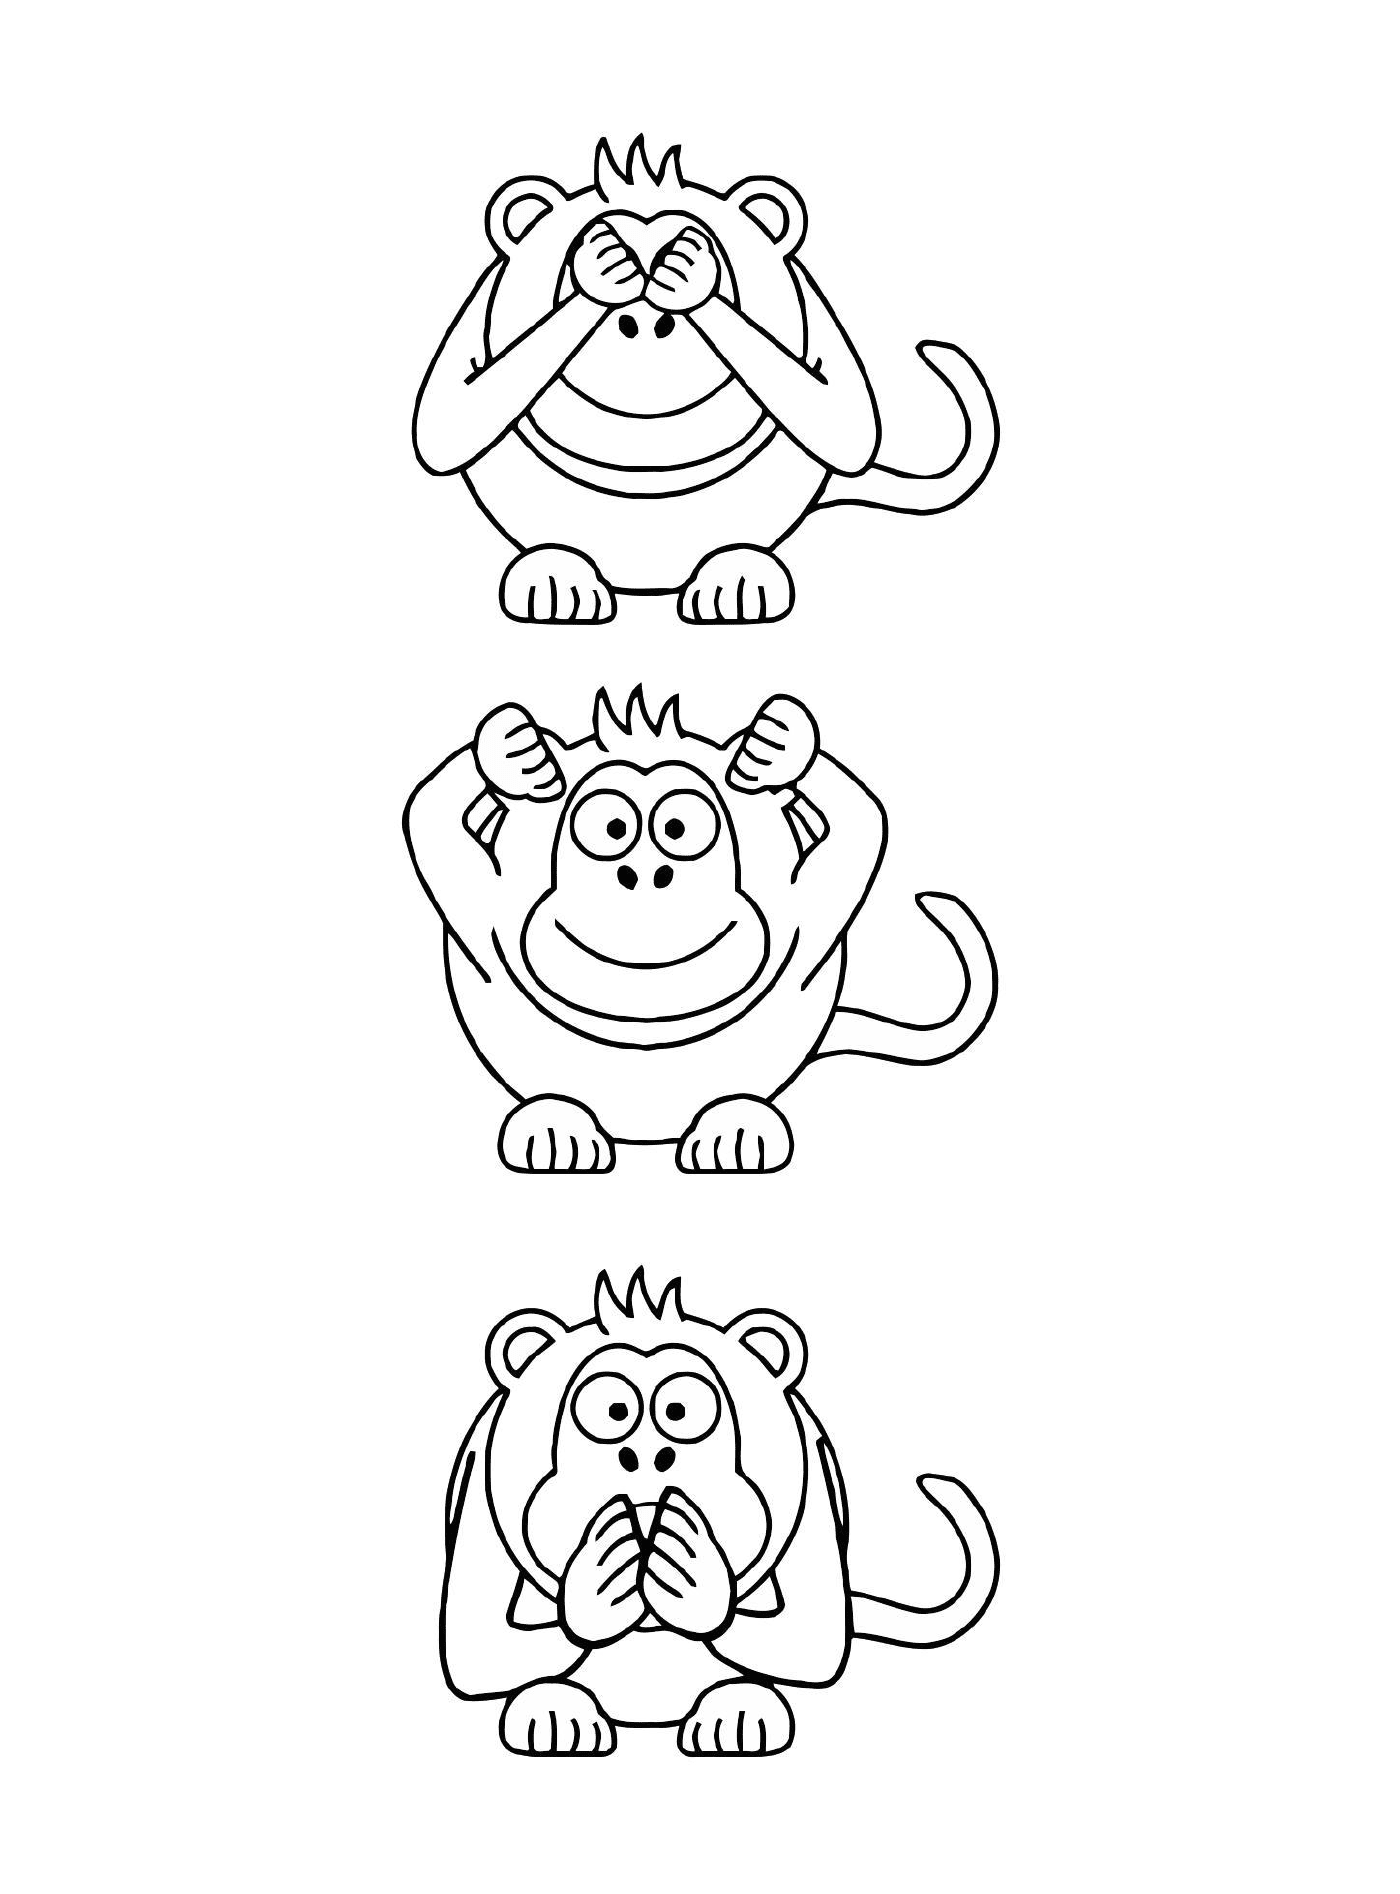  Drei Affen mit unterschiedlichen Ausdrücken 